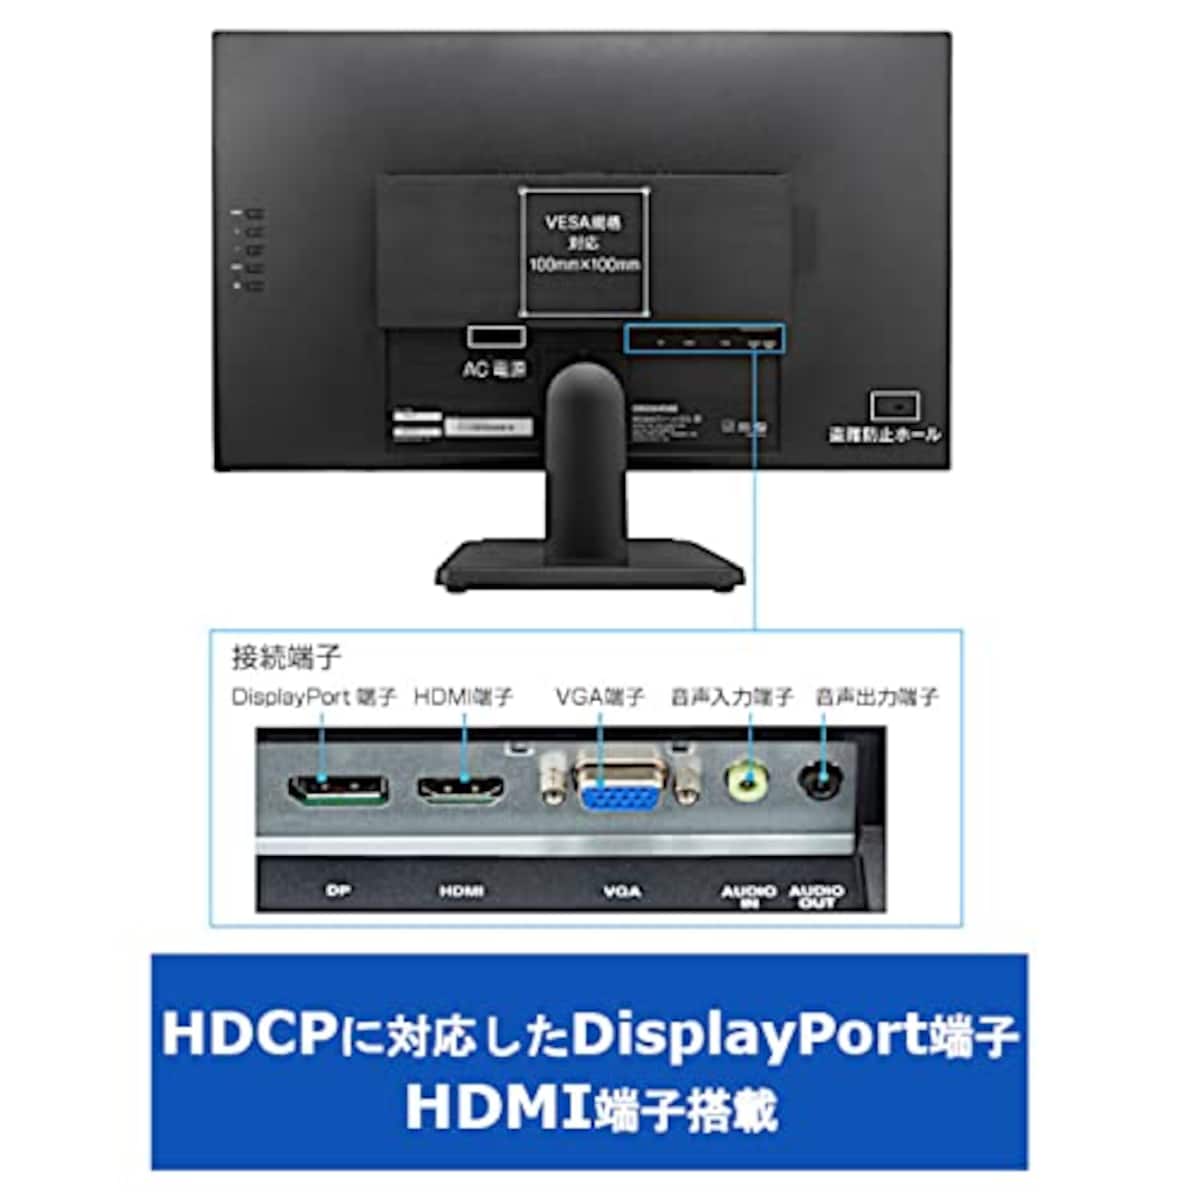  グリーンハウス モニター 27インチ ワイド液晶ディスプレイ フルHD VGA/HDCP対応 DisplayPort HDMI搭載 ブルーライトカット スピーカー内蔵 VESA規格 5年保証 GH-LCW27C-BK画像6 